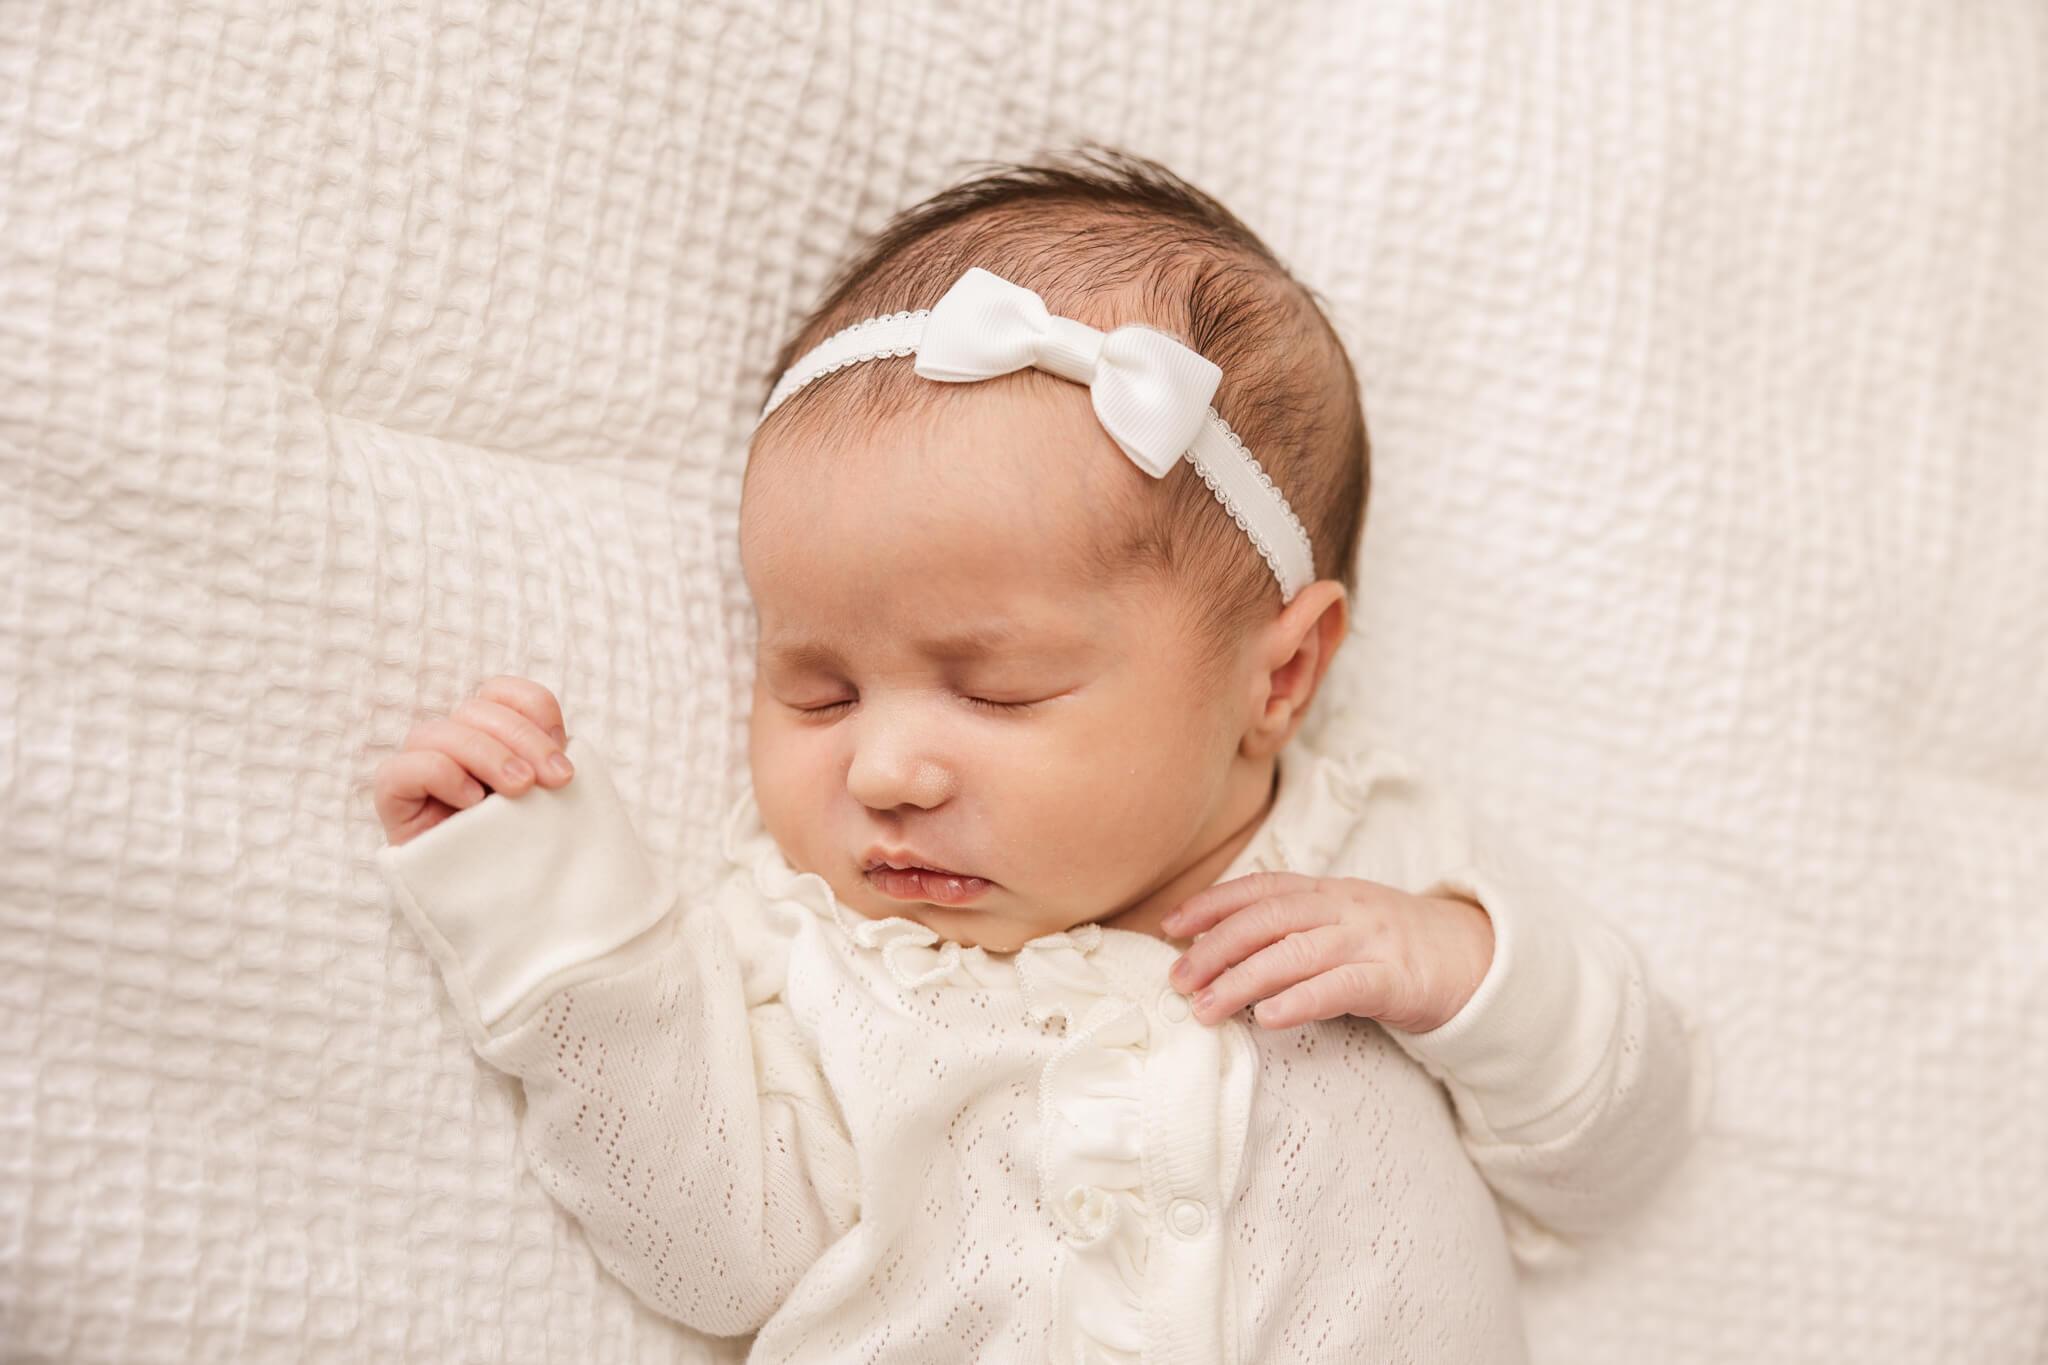 newborn baby girl in cream onesie and white headband sleeping Flack Family Chiropractic